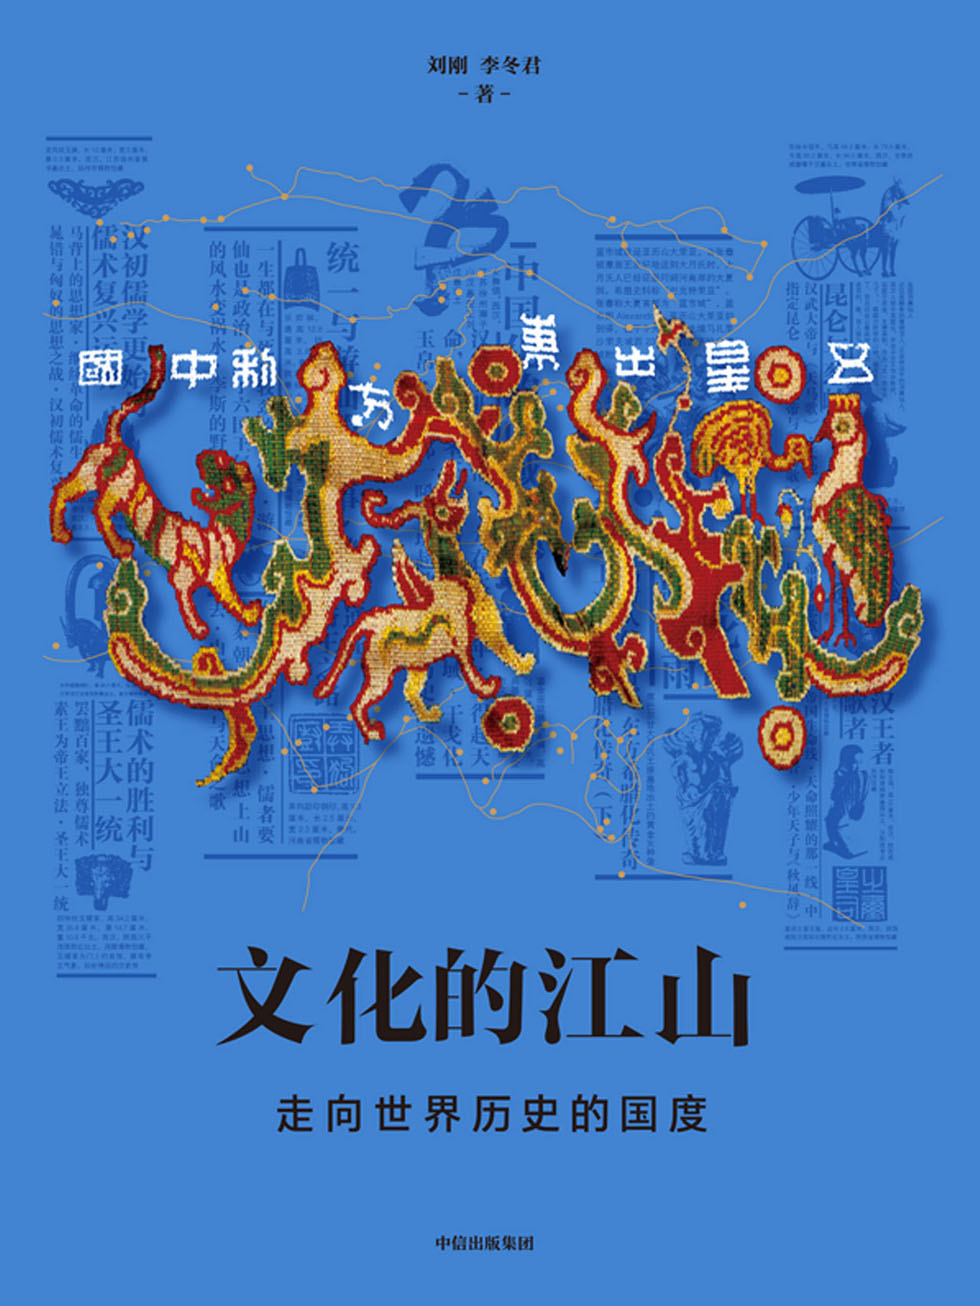 文化的江山05：走向世界历史的国度—李冬君 & 刘刚—pdf+mobi+epub+txt+azw3电子书下载